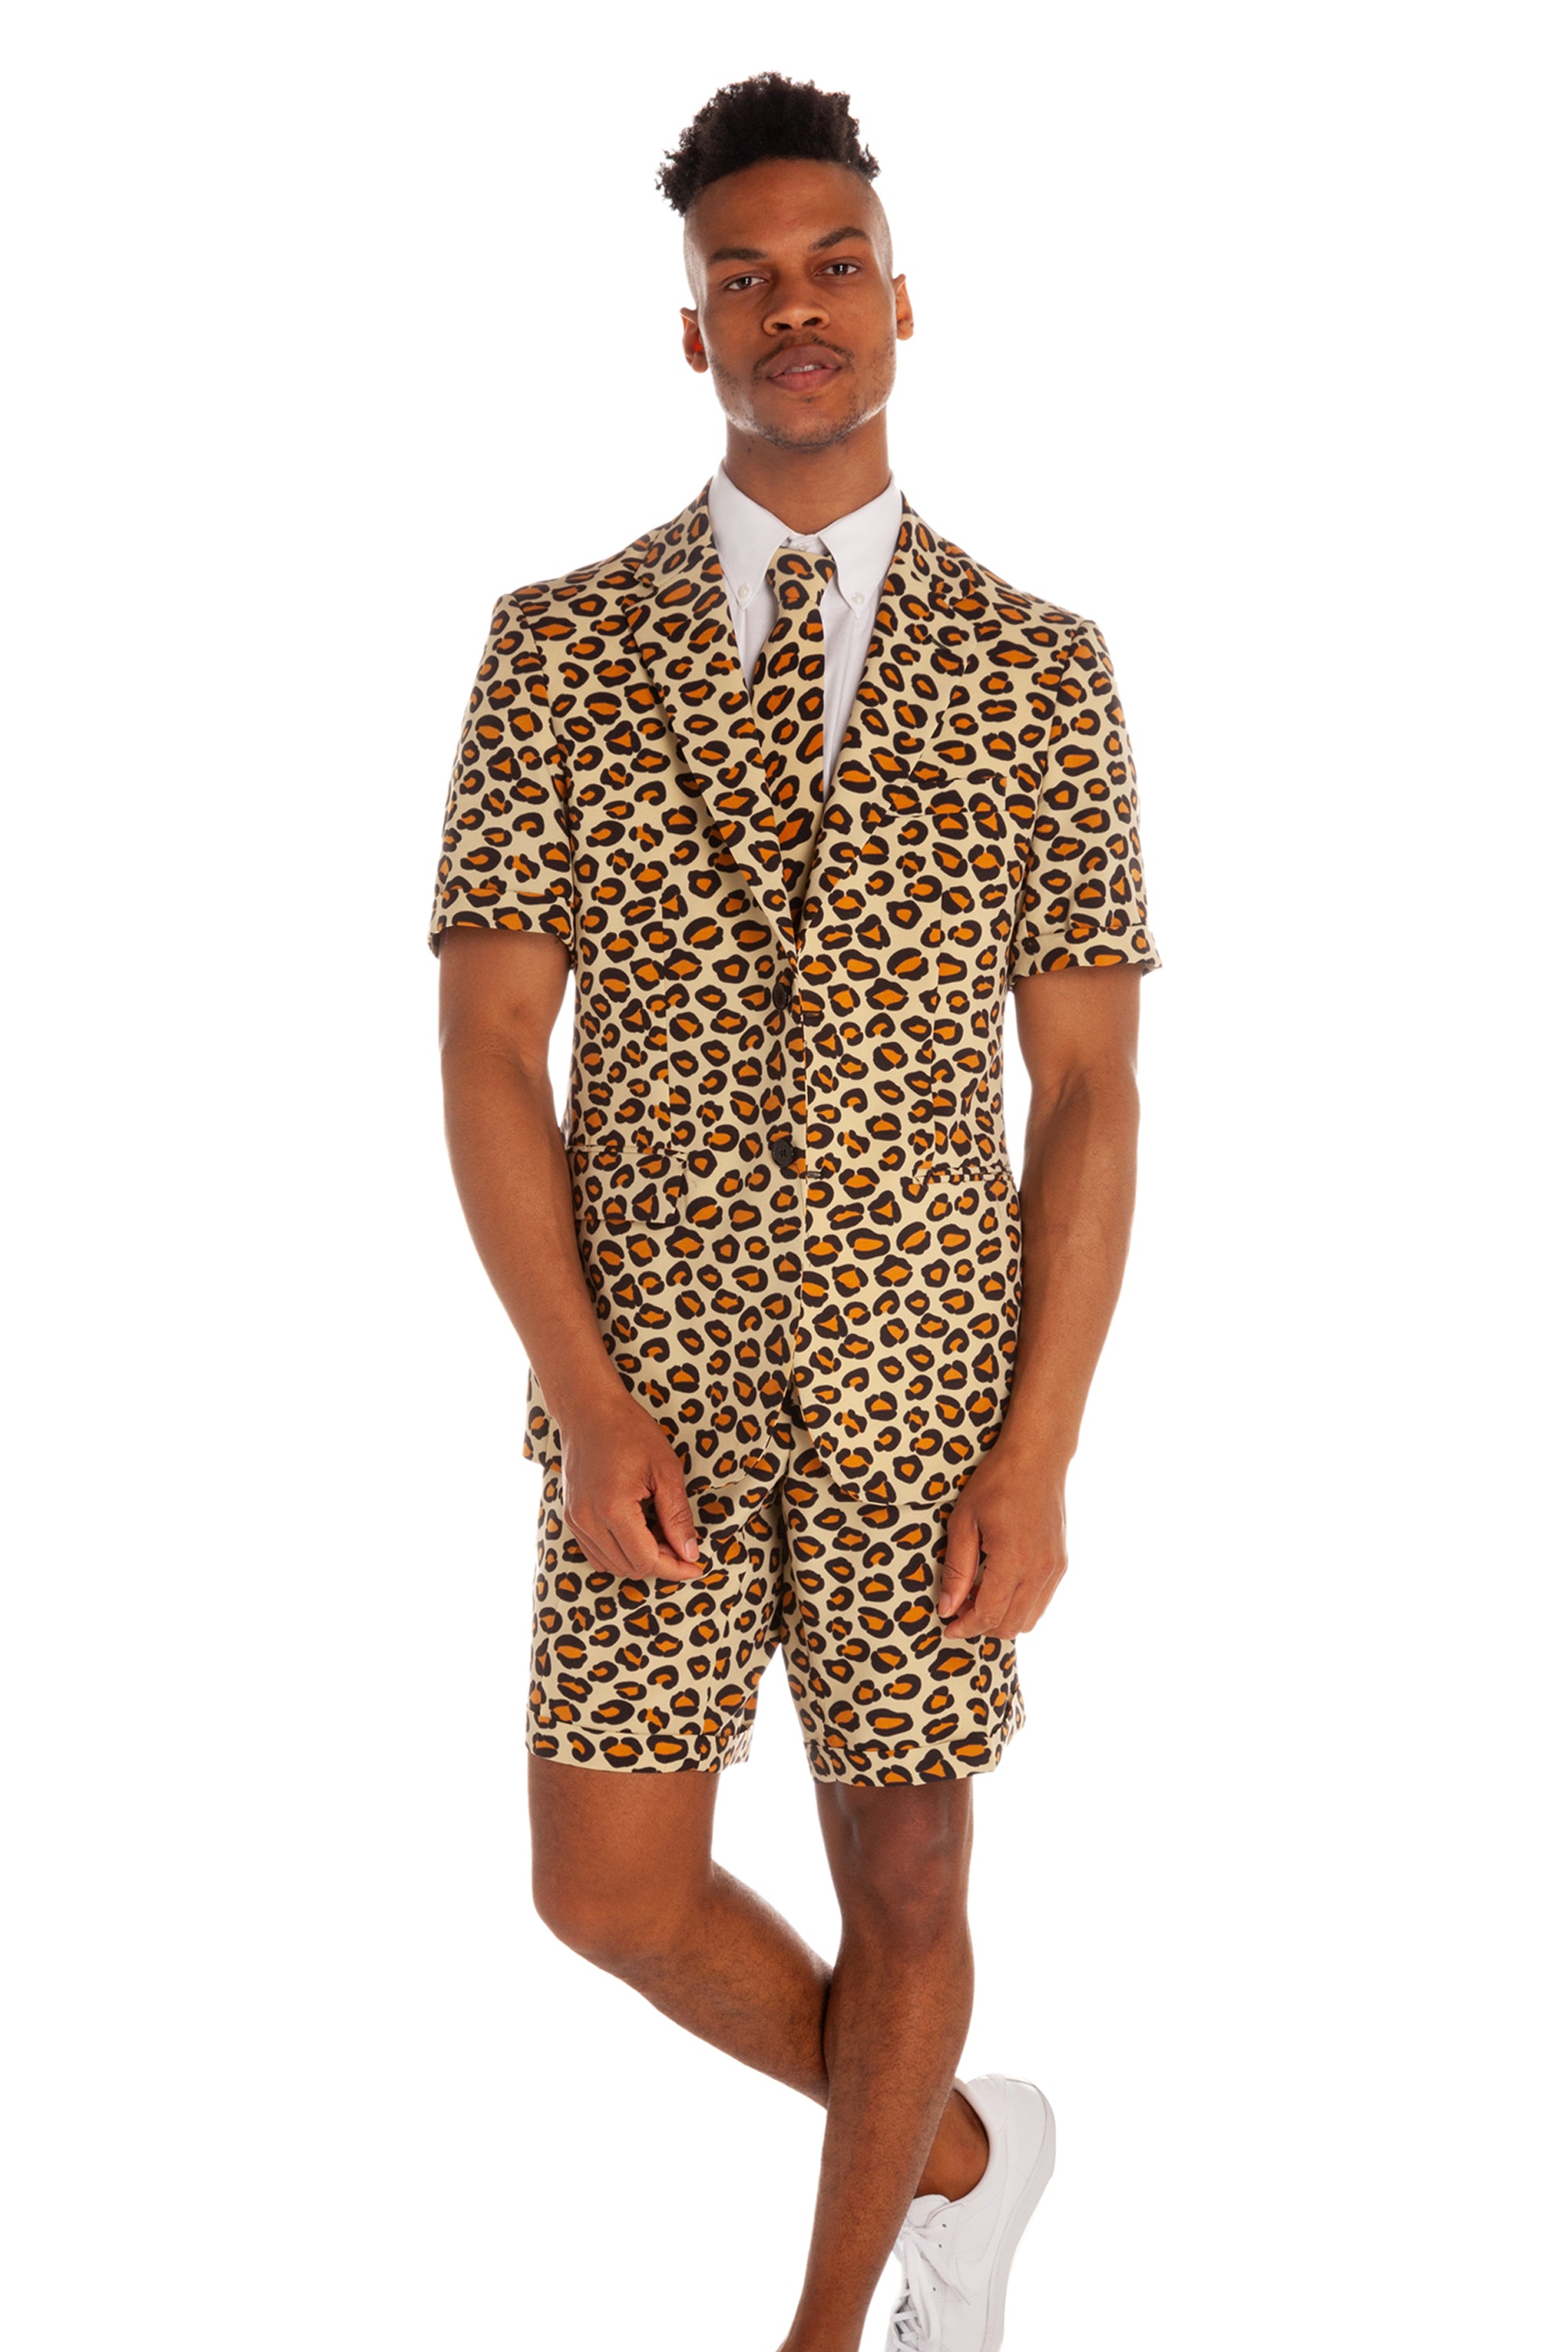 Summer Jungle Cat Leopard Print Shorts Suit